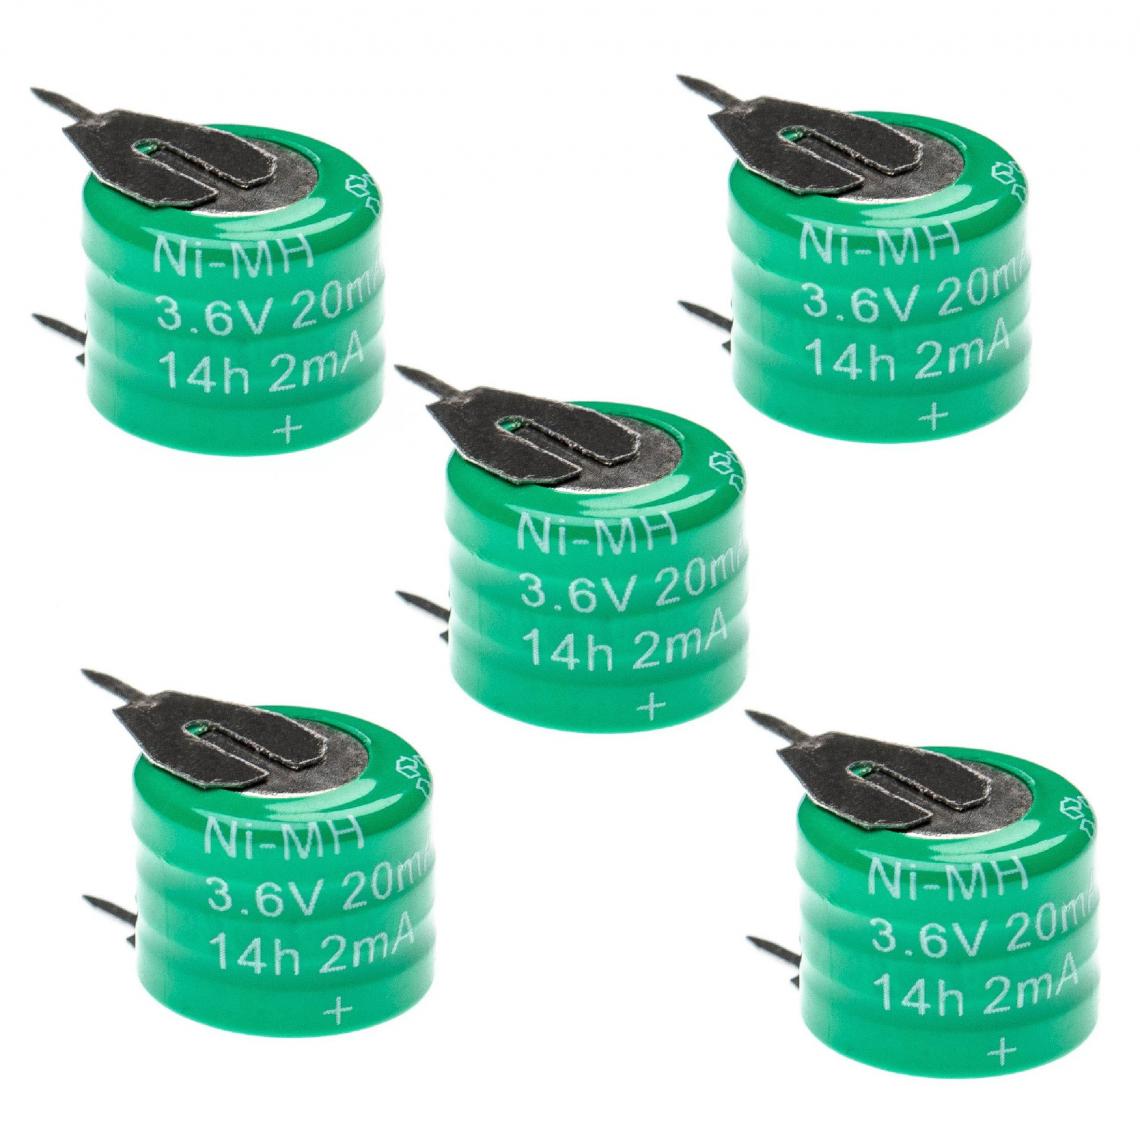 Vhbw - vhbw 5x Batteries remplacement pour 3/V15H pour modéle RC (20mAh, 3,6V, NiMH), avec connexion à 2 broches - Autre appareil de mesure